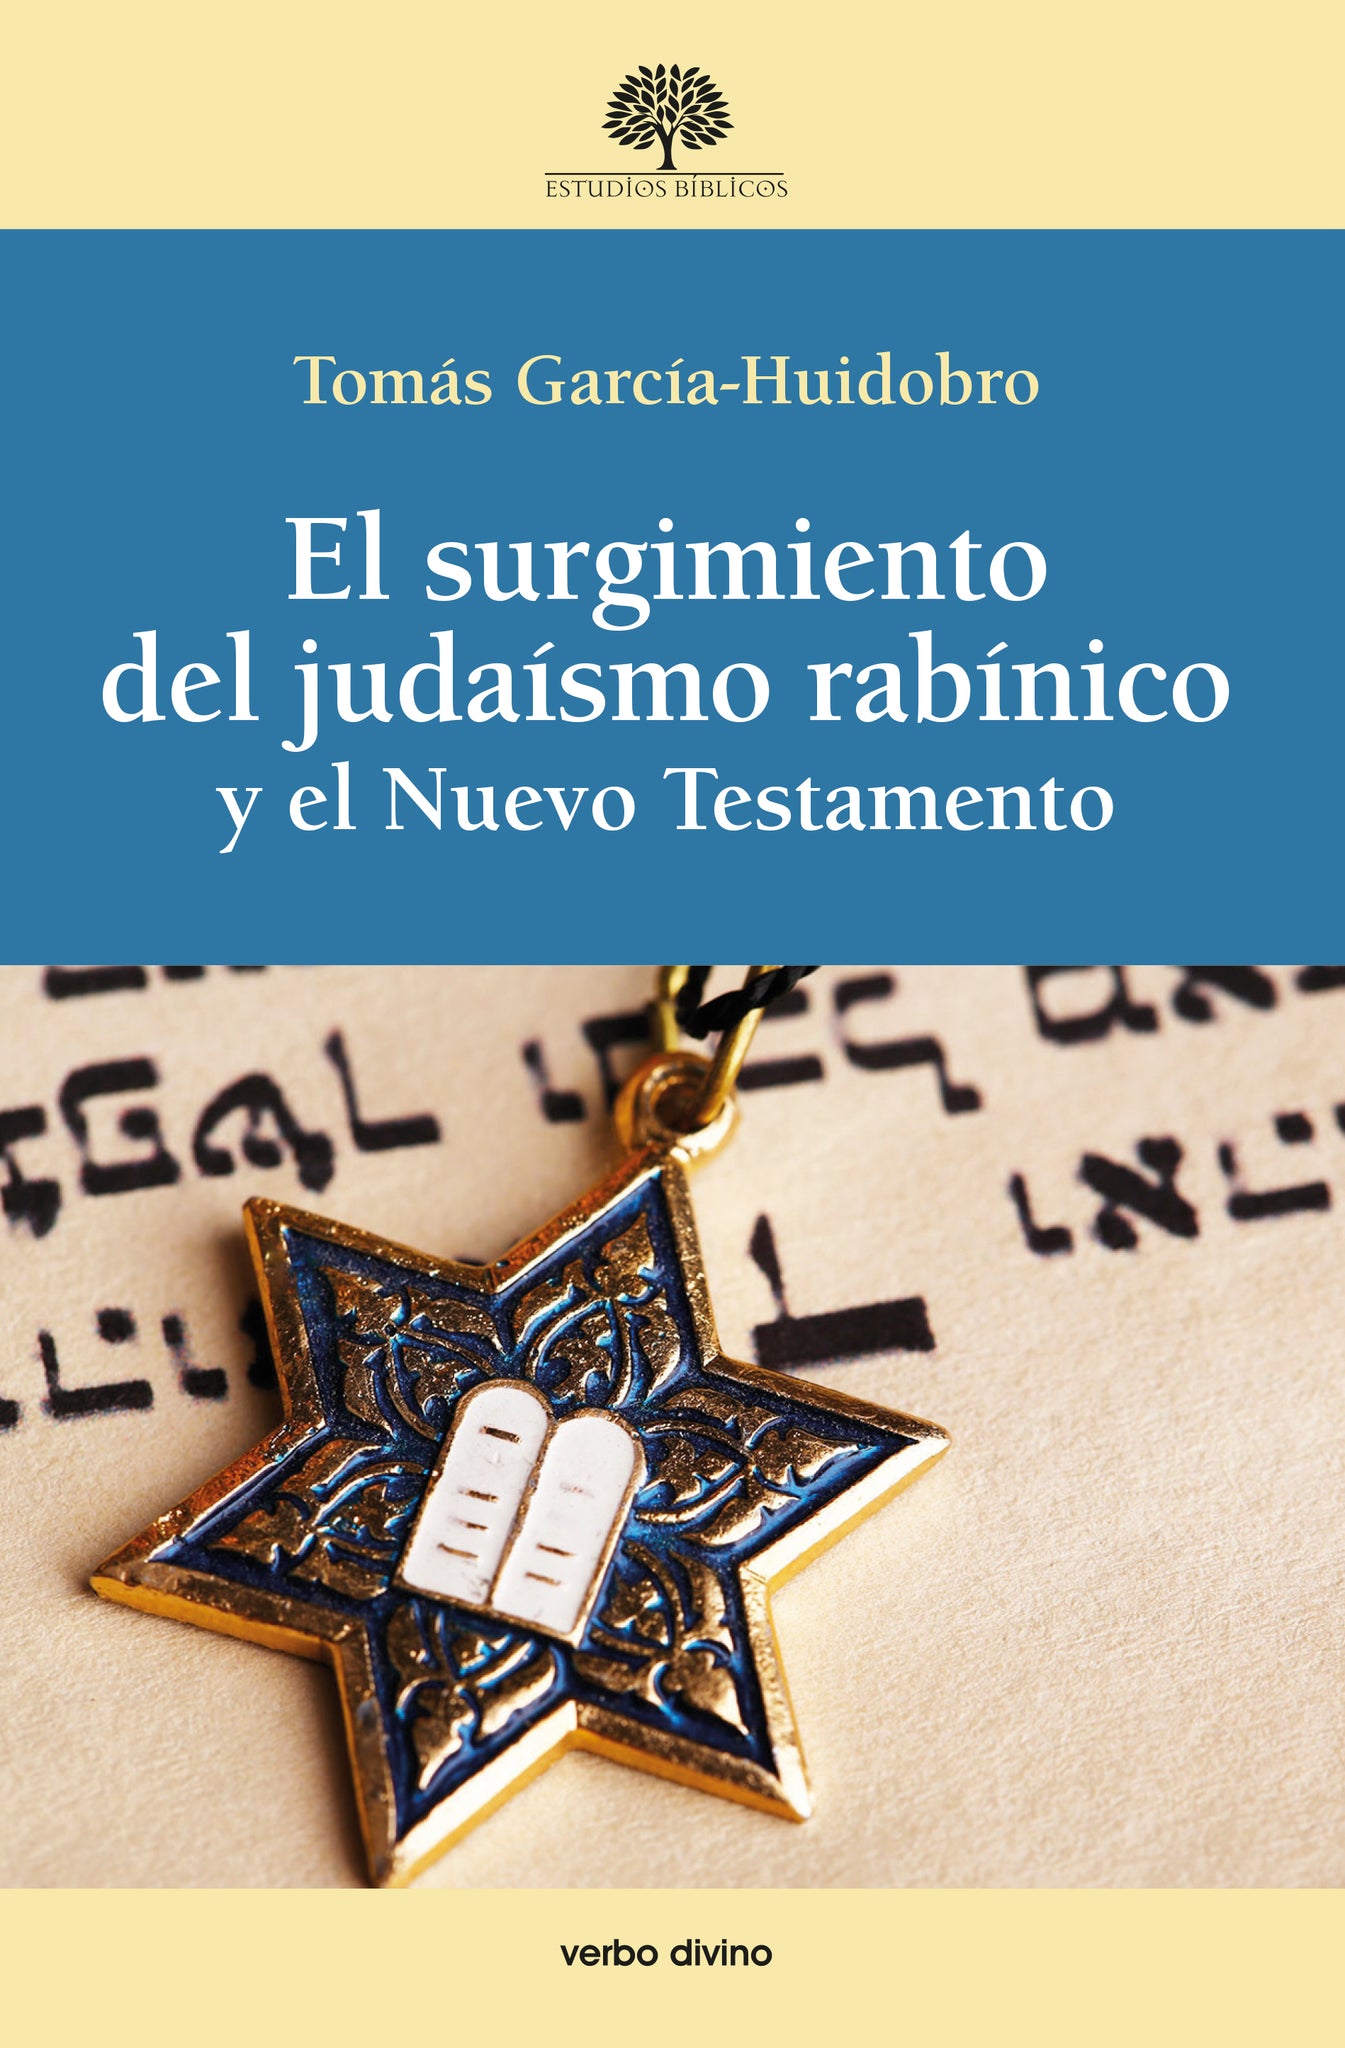 SURGIMIENTO DEL JUDAISMO RABINICO Y EL N.T.